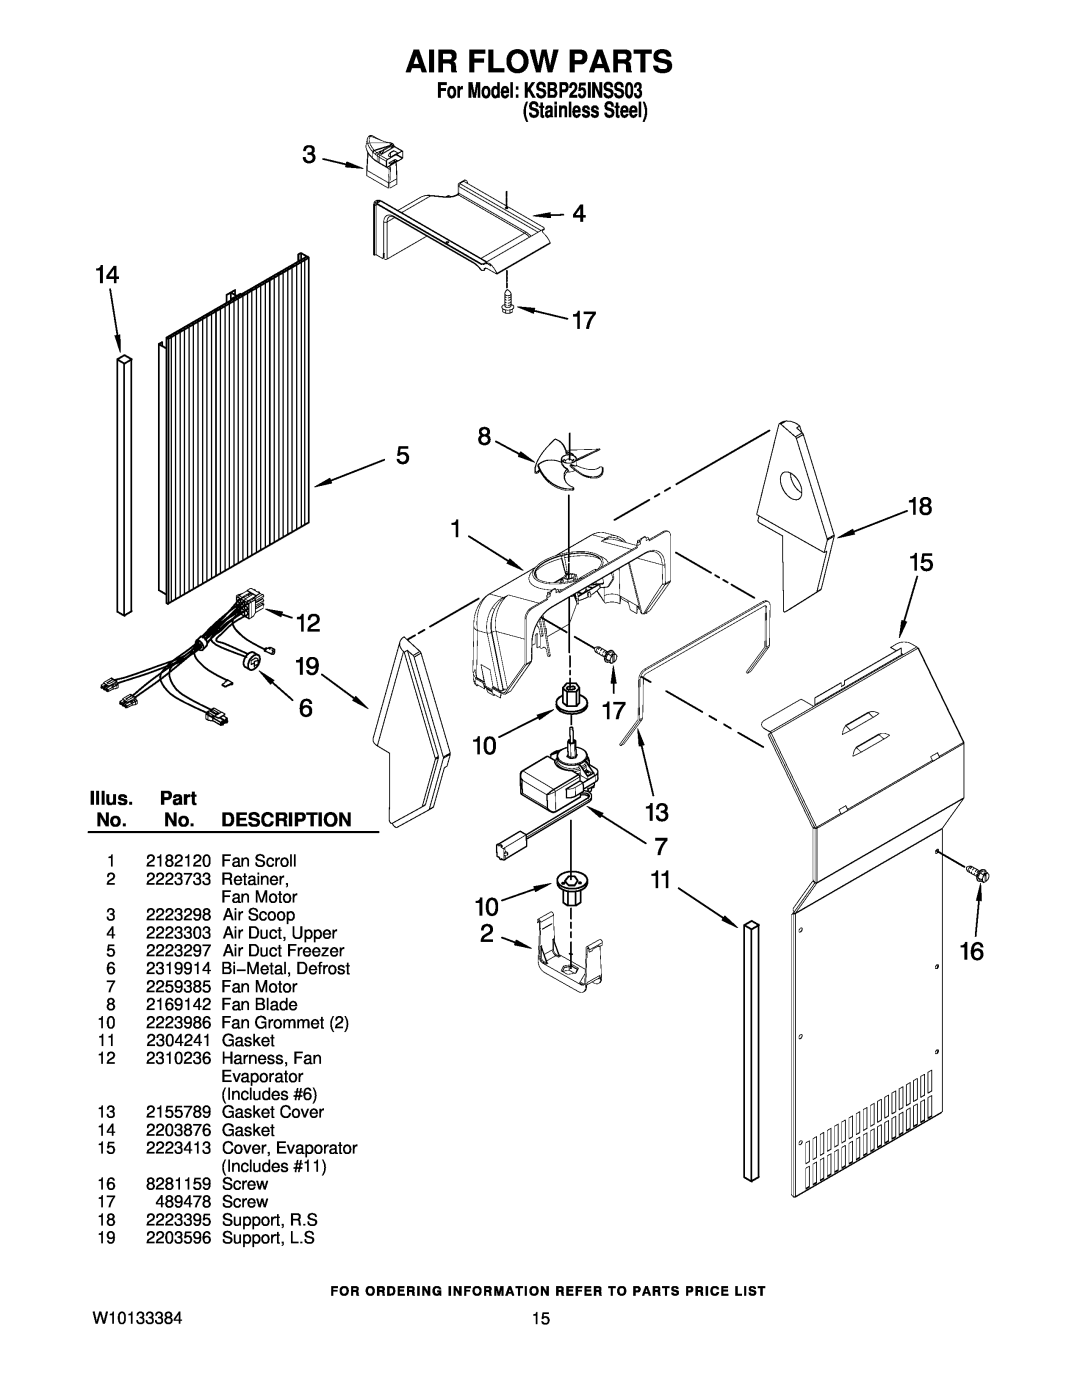 KitchenAid manual Air Flow Parts, For Model KSBP25INSS03 Stainless Steel, Illus. Part No. No. DESCRIPTION 